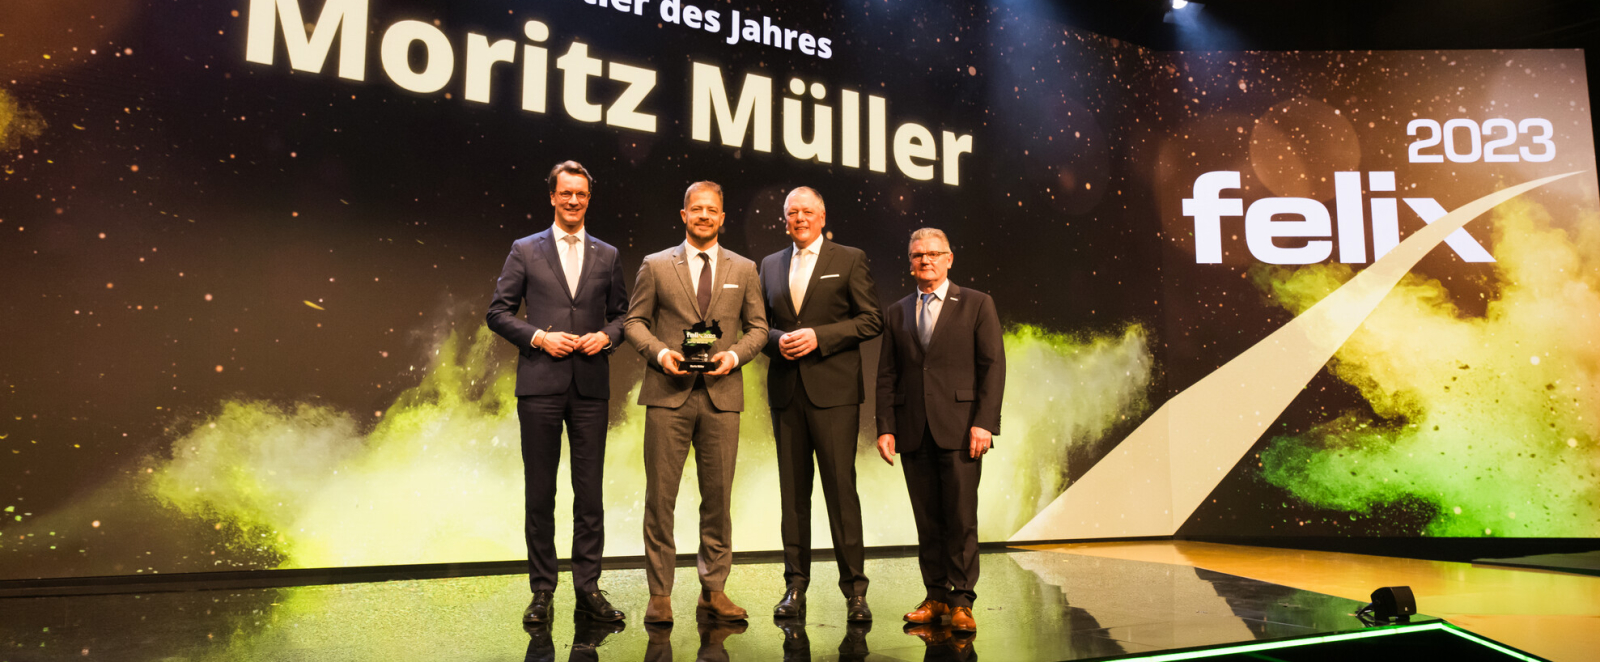 Moritz Müller erhält den Award auf der bühne